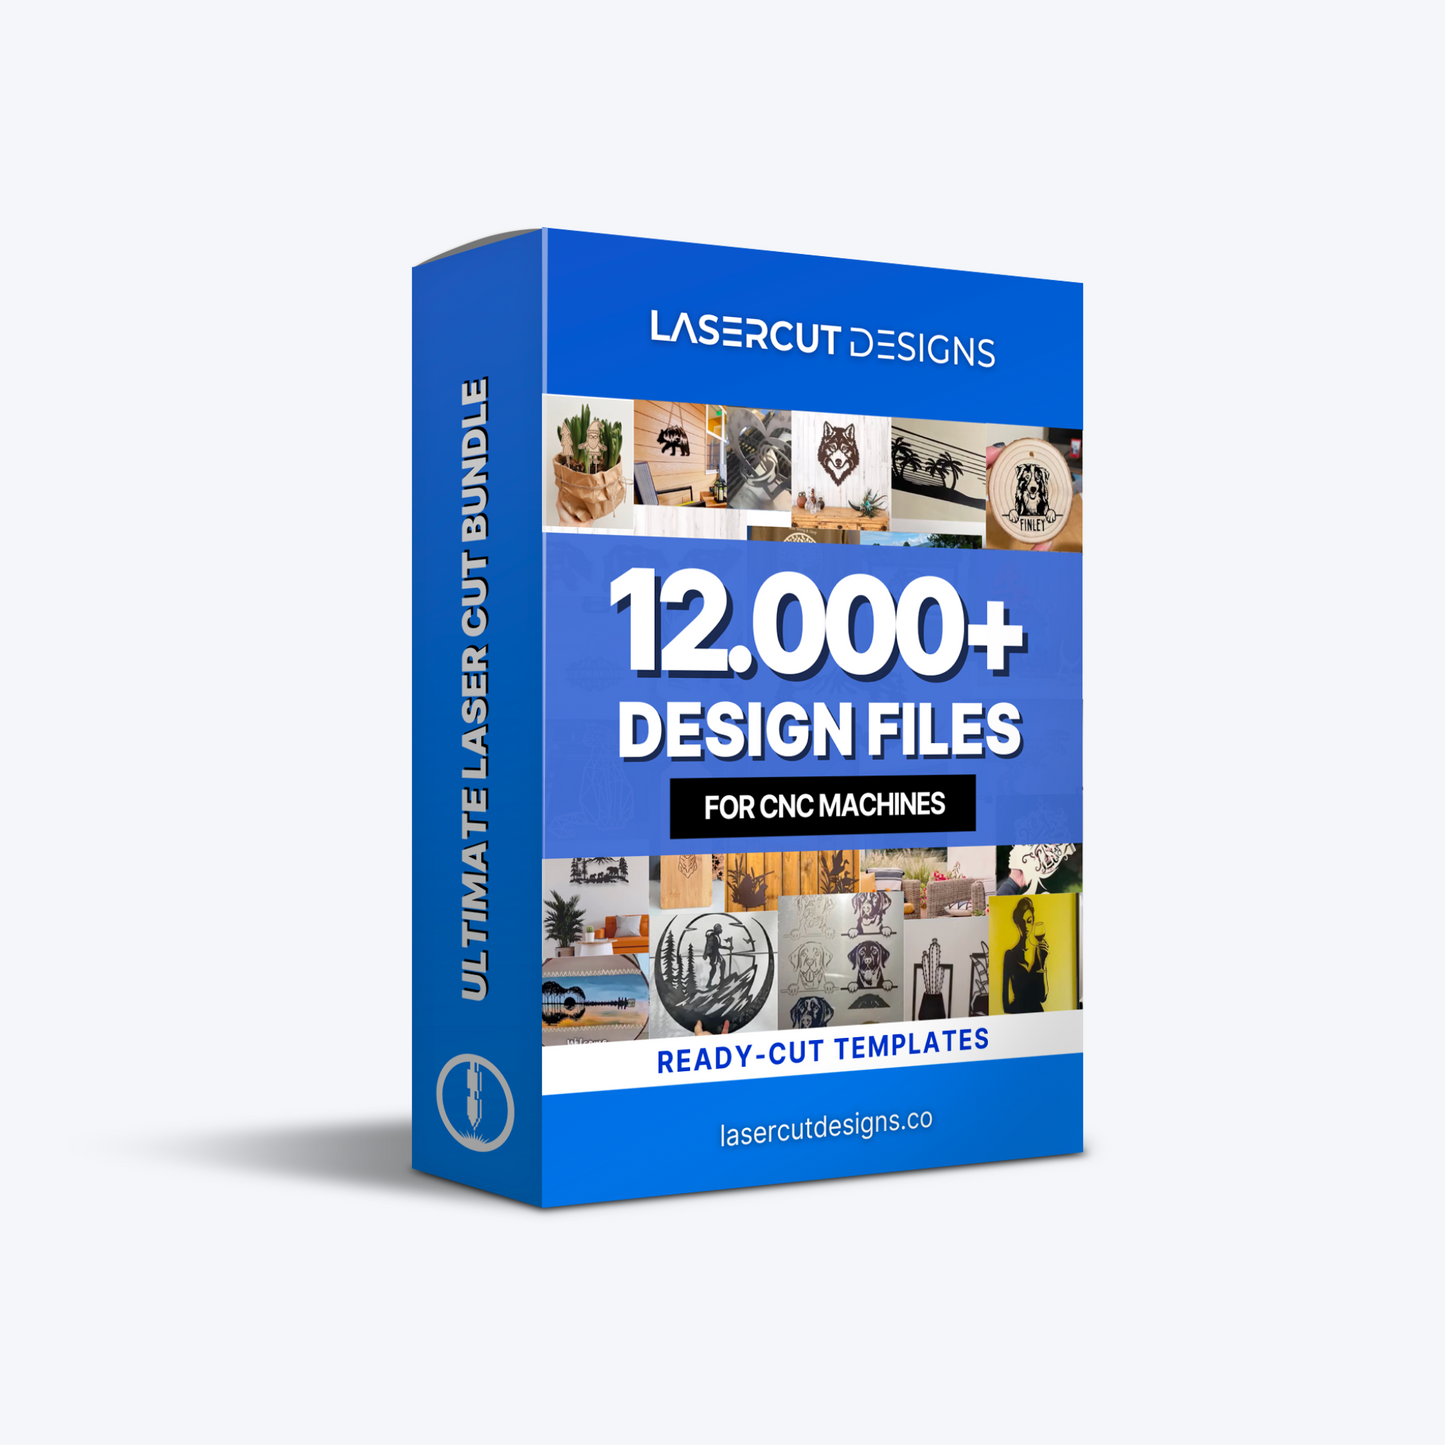 Ultimate Laser Cut Bundle - 12,000+ Design Files